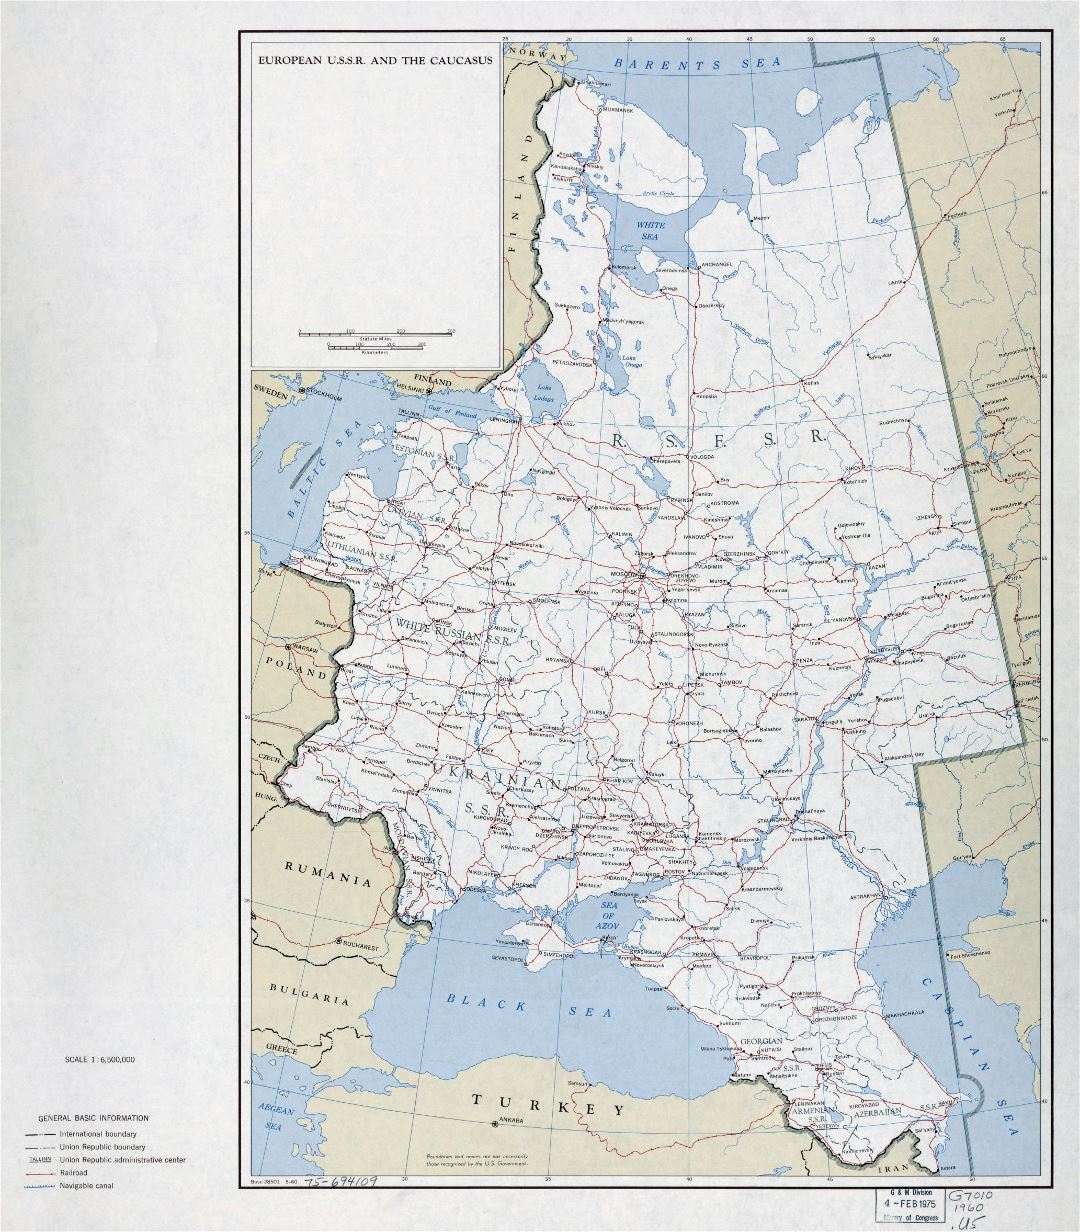 Большая подробная политическая и административная карта европейской части СССР и Кавказа с автодорогами, железными дорогами и городами - 1960